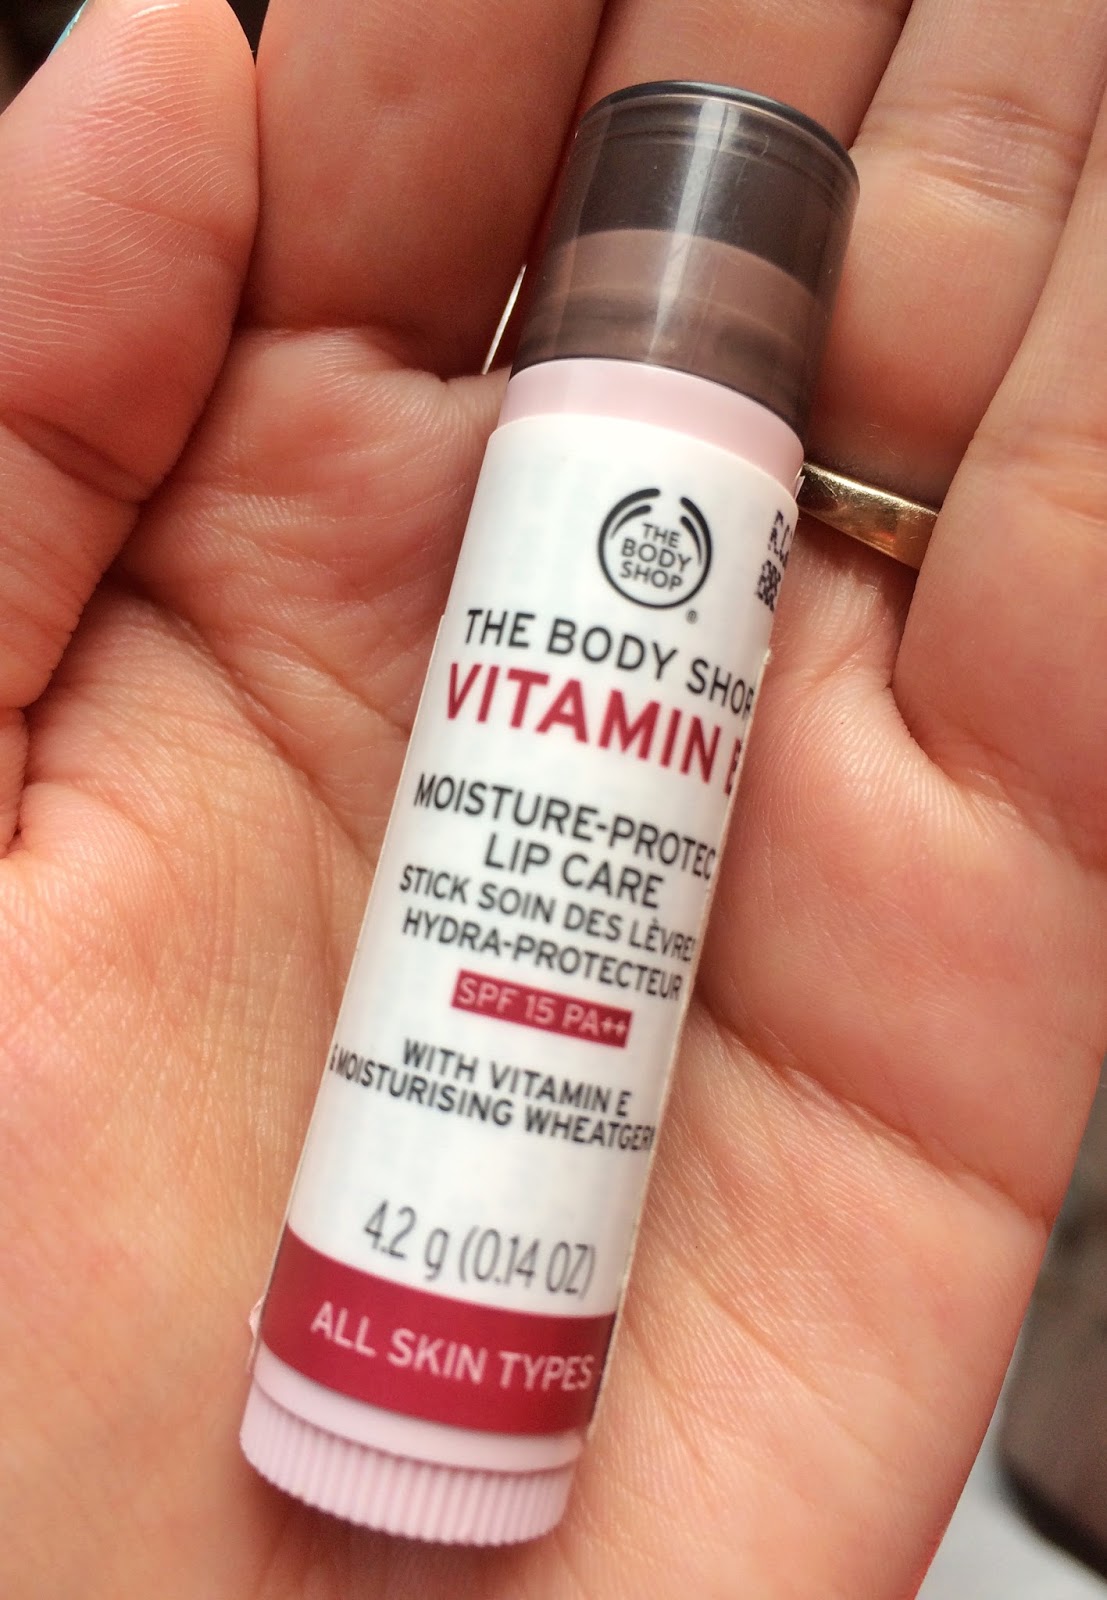 The Body Shop Vitamin E Lip Care Stick With Spf 15 Review